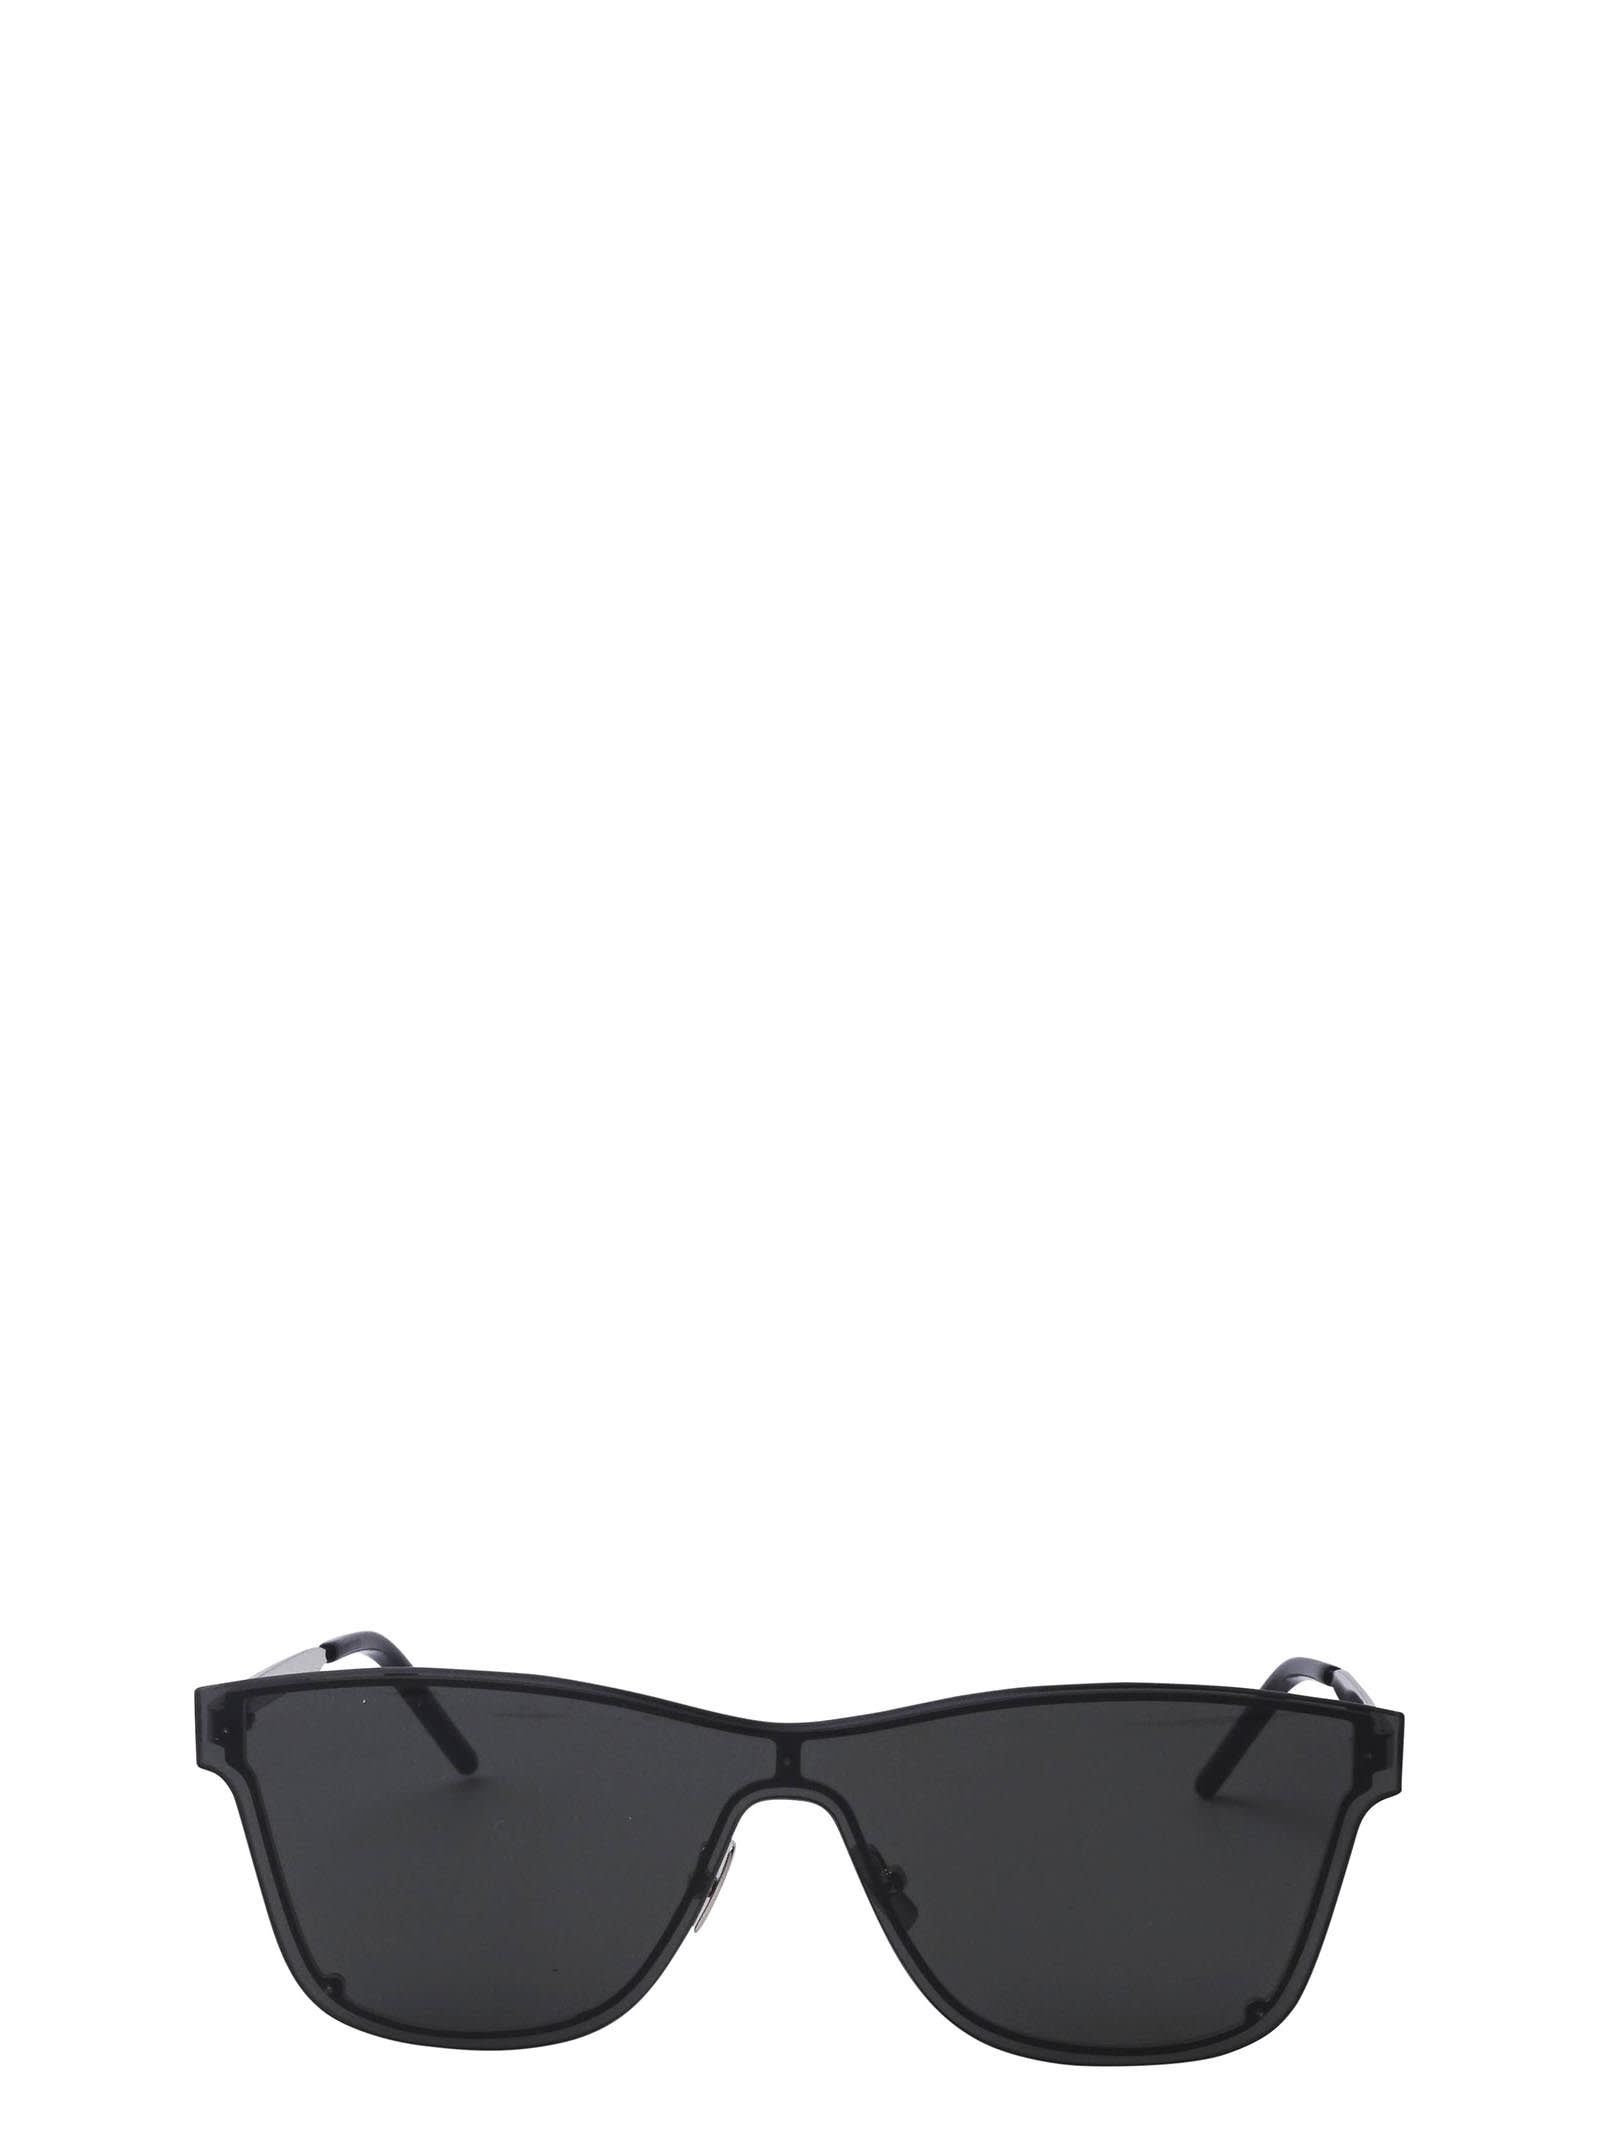 Saint Laurent Saint Laurent Sl 51 Over Mask Silver Sunglasses